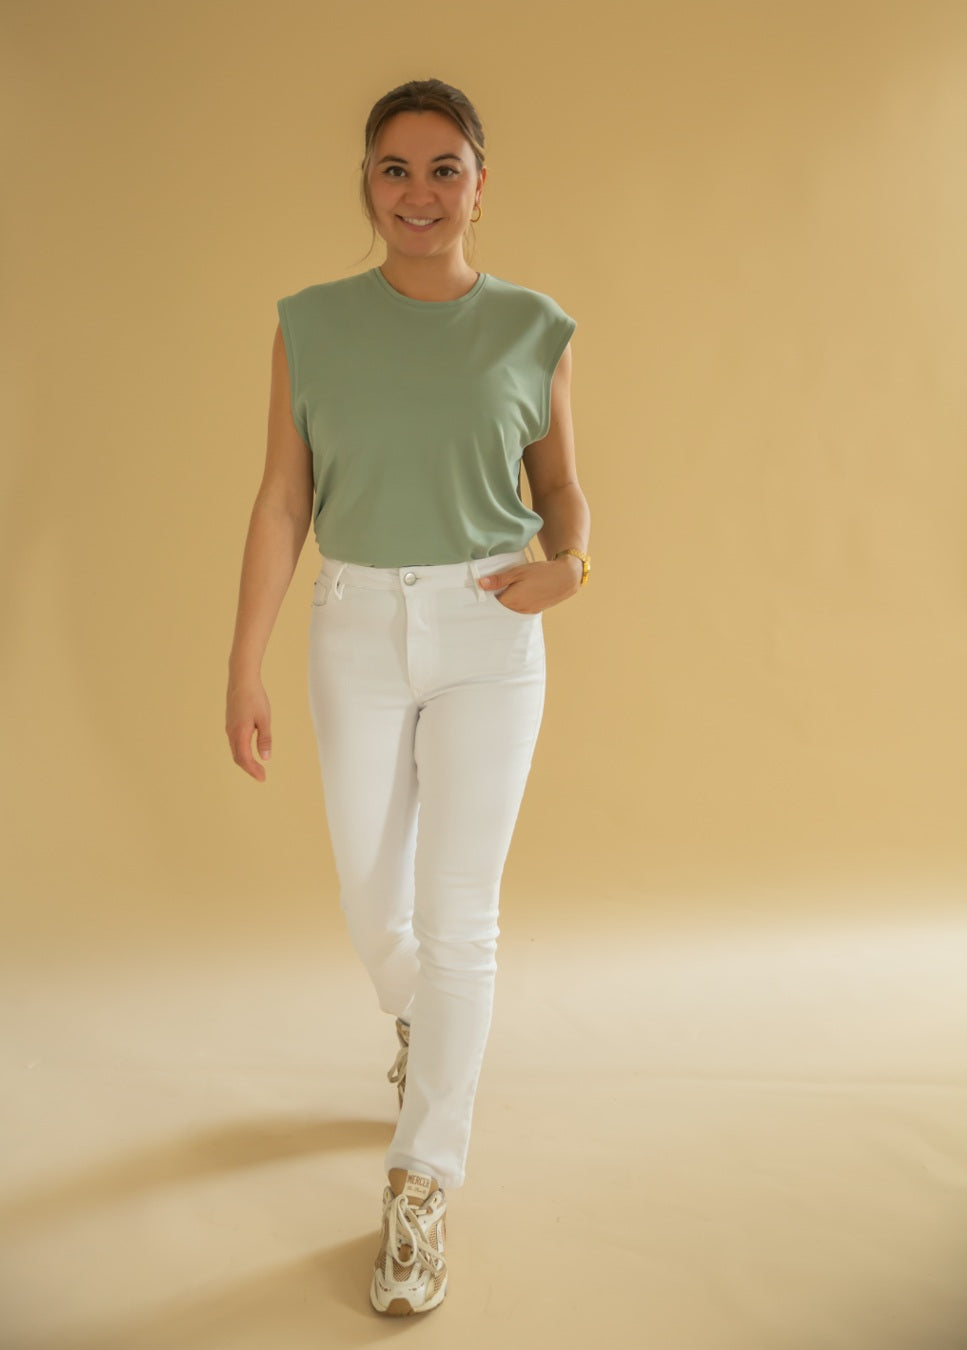 Een heerlijke zomerse jeans, deze witte straight fit jeans van het merk Homage. De Sarah Stretchy Straight fit Jeans heeft een skinny fit rond het bovenbeen en is iets slank aan de zoom. De witte jeans heeft een hoge taille en is gemaakt van powerstretch-denim. Shop de nieuwe collectie dames jeans, witte jeans Homage